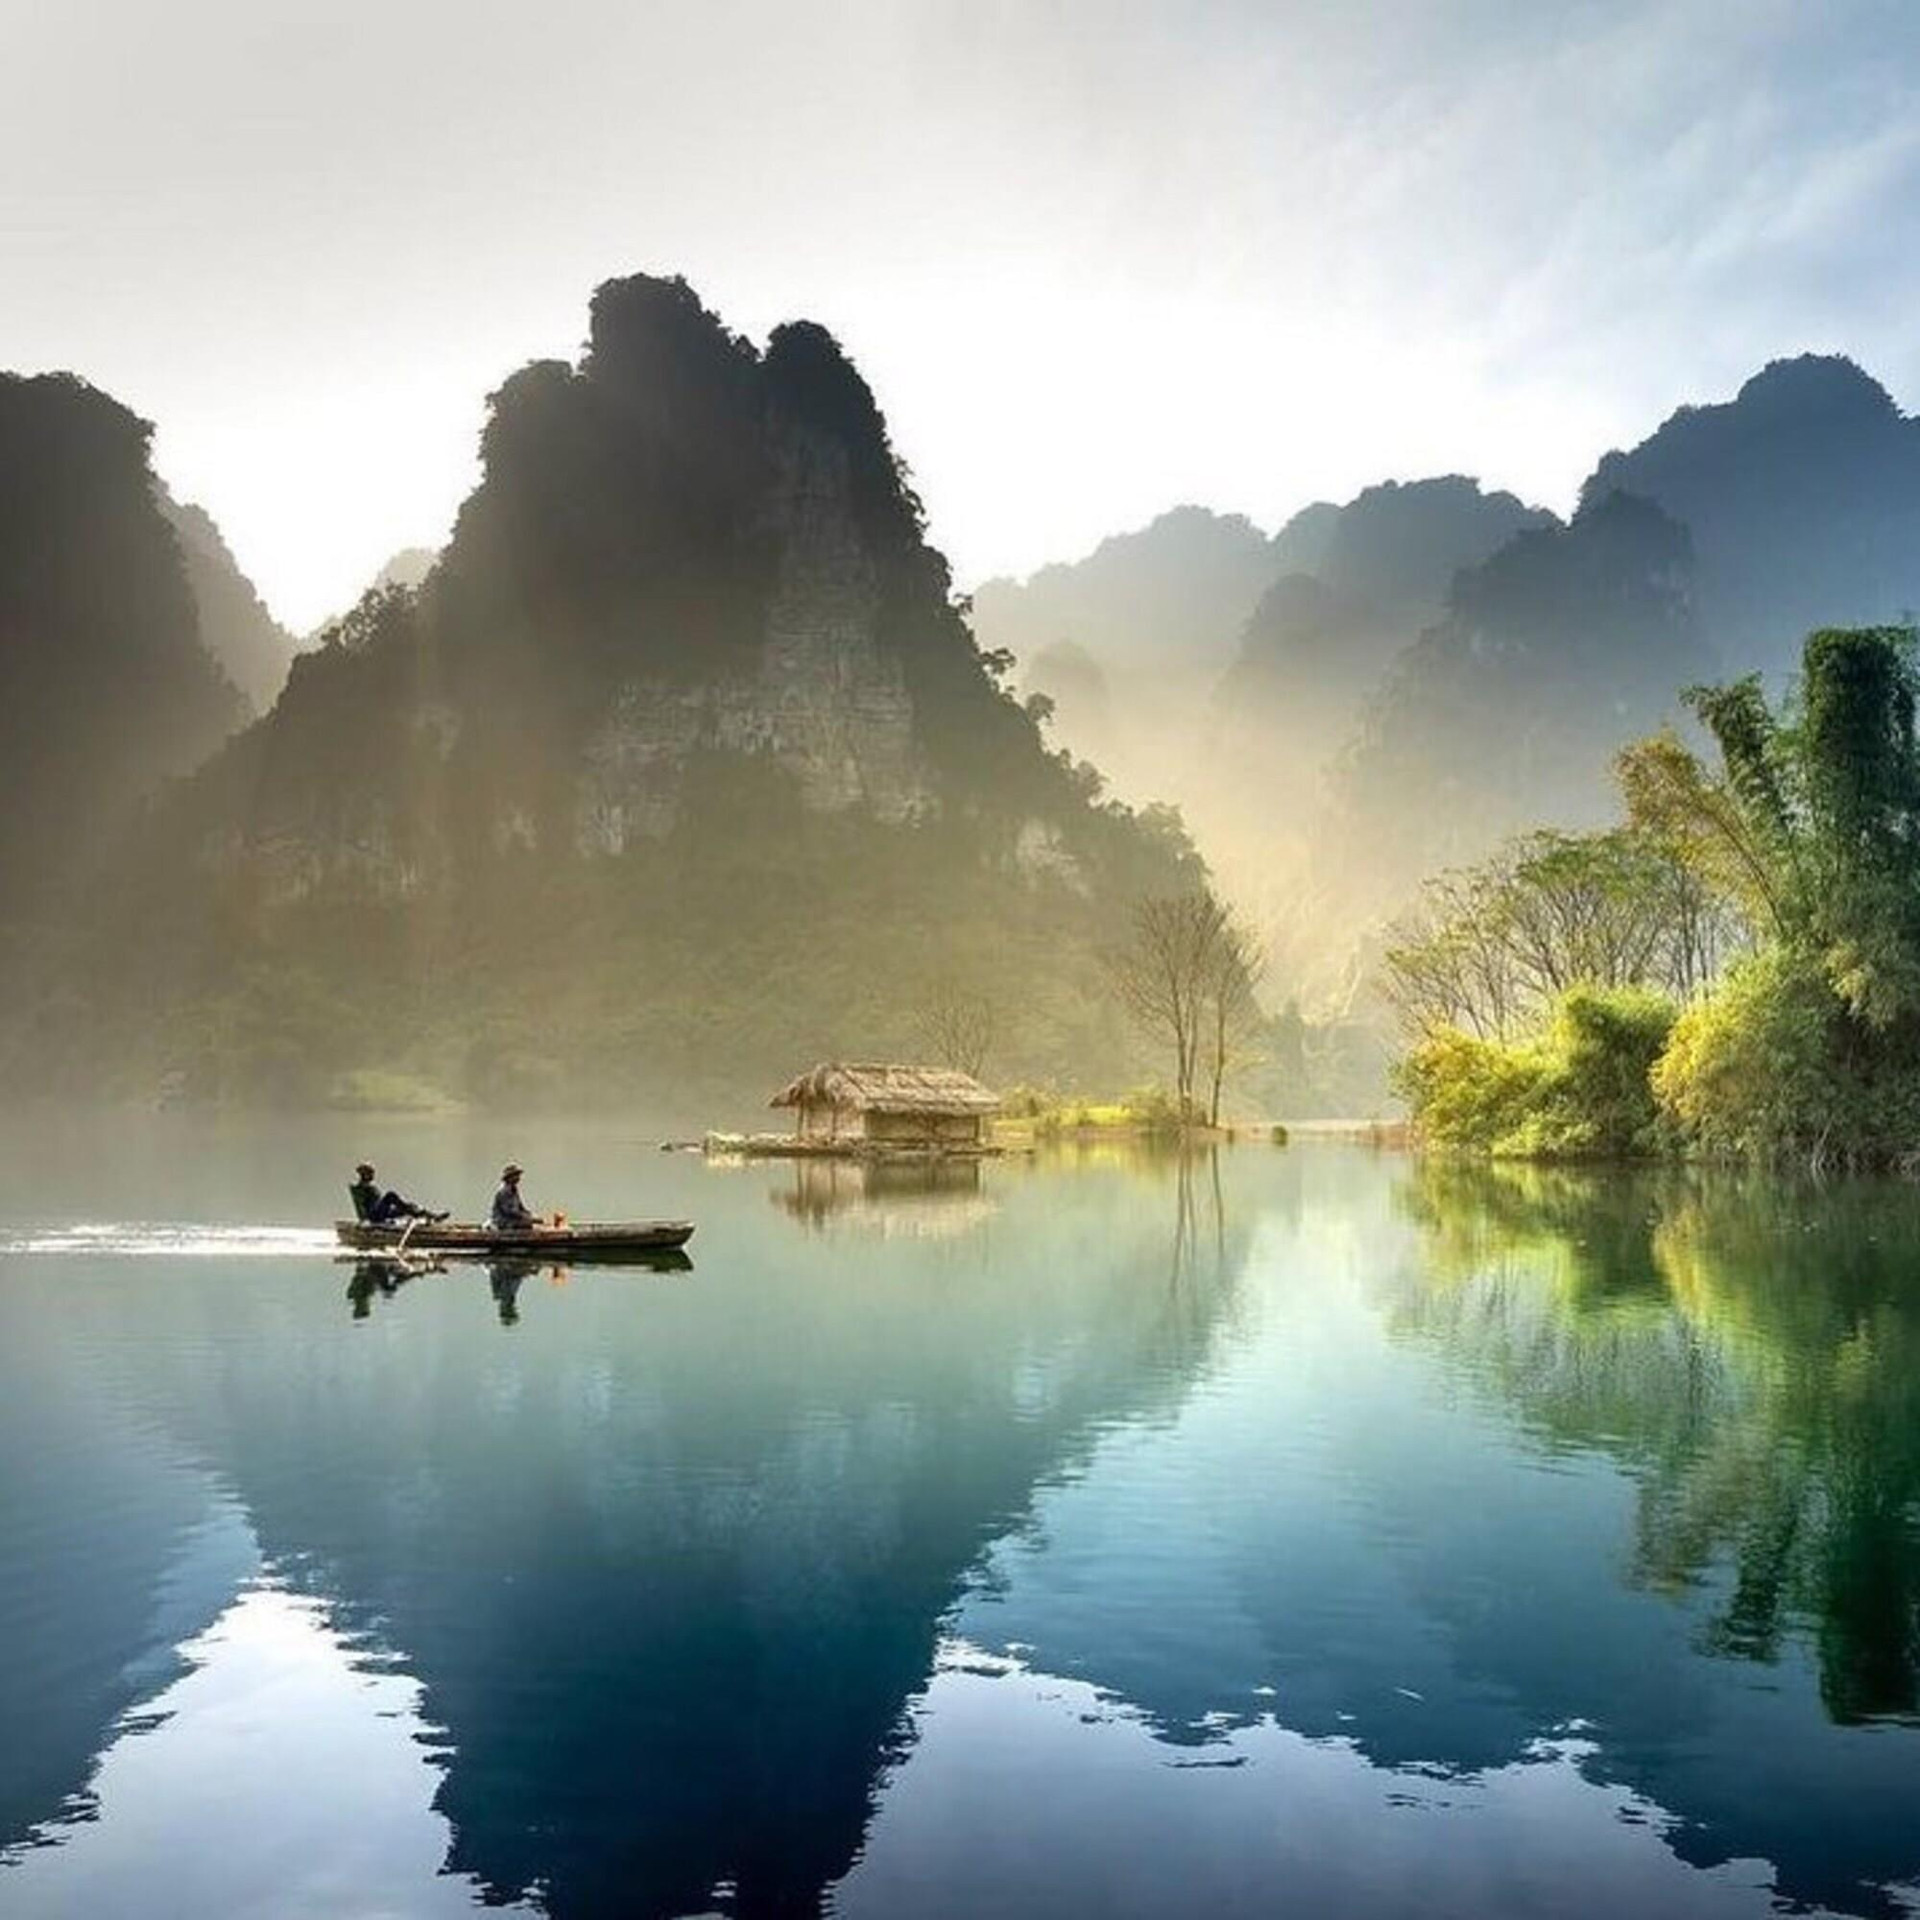 Hồ nước ngọt đẹp bậc nhất Việt Nam huyền ảo như tranh, nhất định phải đến 1 lần - 9